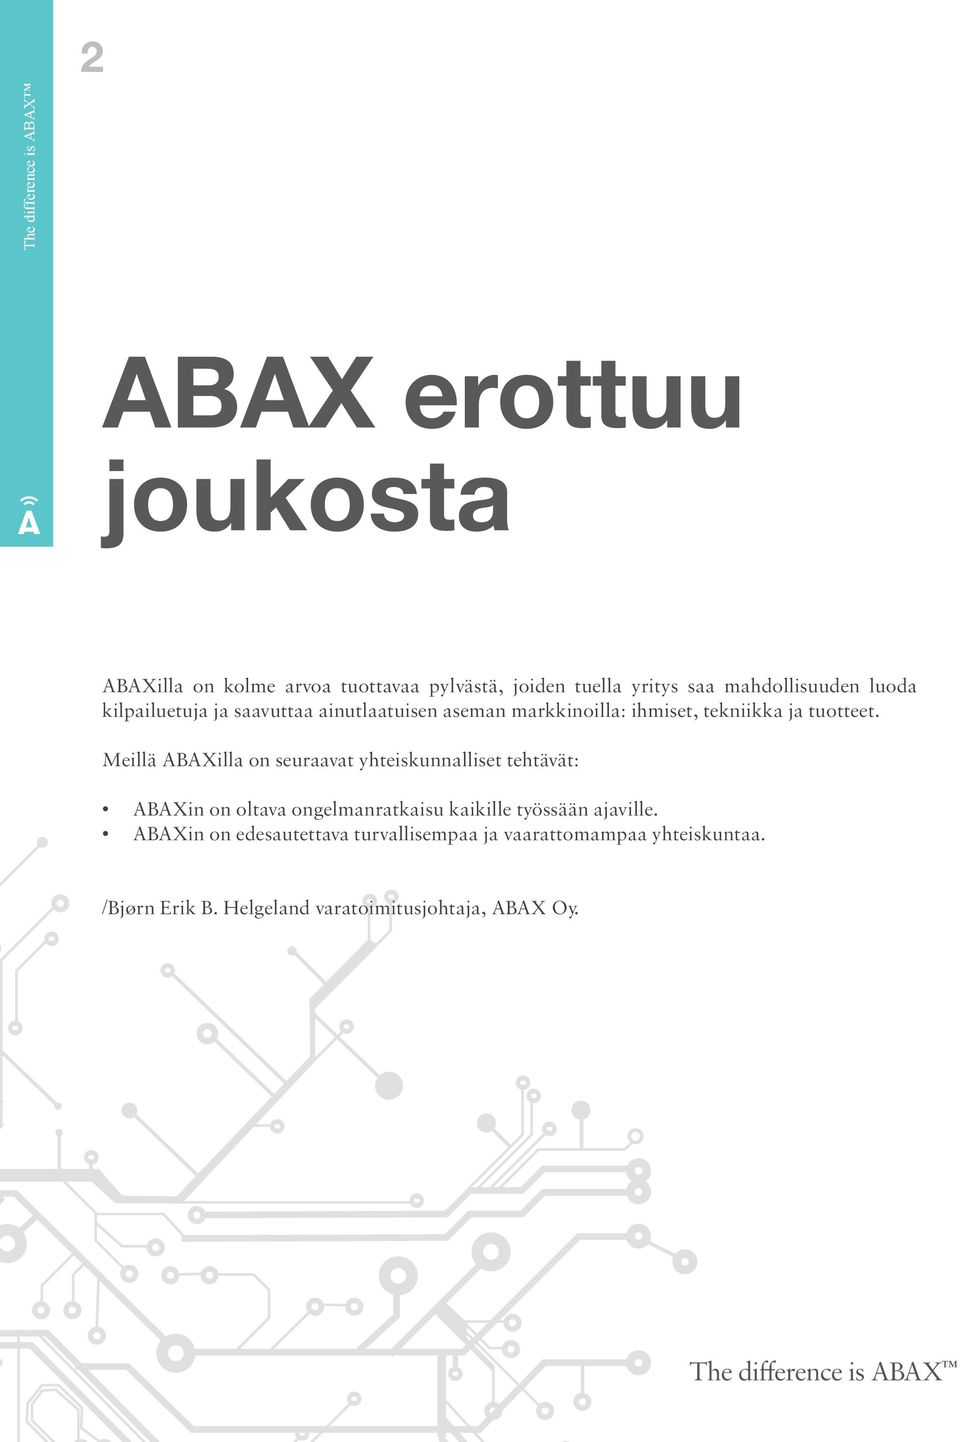 tuotteet. Meillä ABAXilla on seuraavat yhteiskunnalliset tehtävät: ABAXin on oltava ongelmanratkaisu kaikille työssään ajaville.